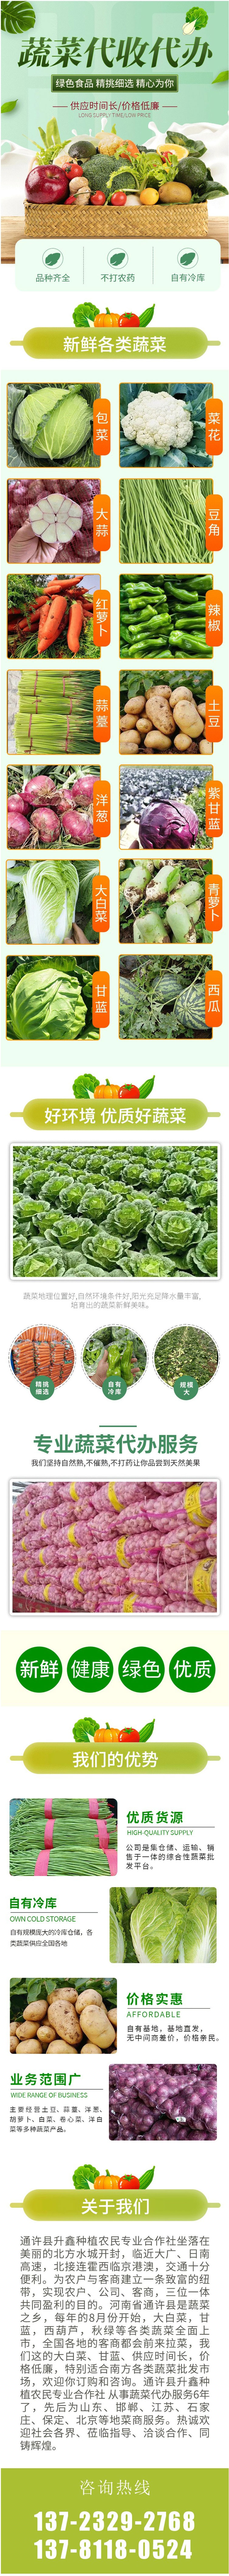 有机胡萝卜-250g-红萝卜-火锅食材-新鲜蔬菜-产地直供.jpg